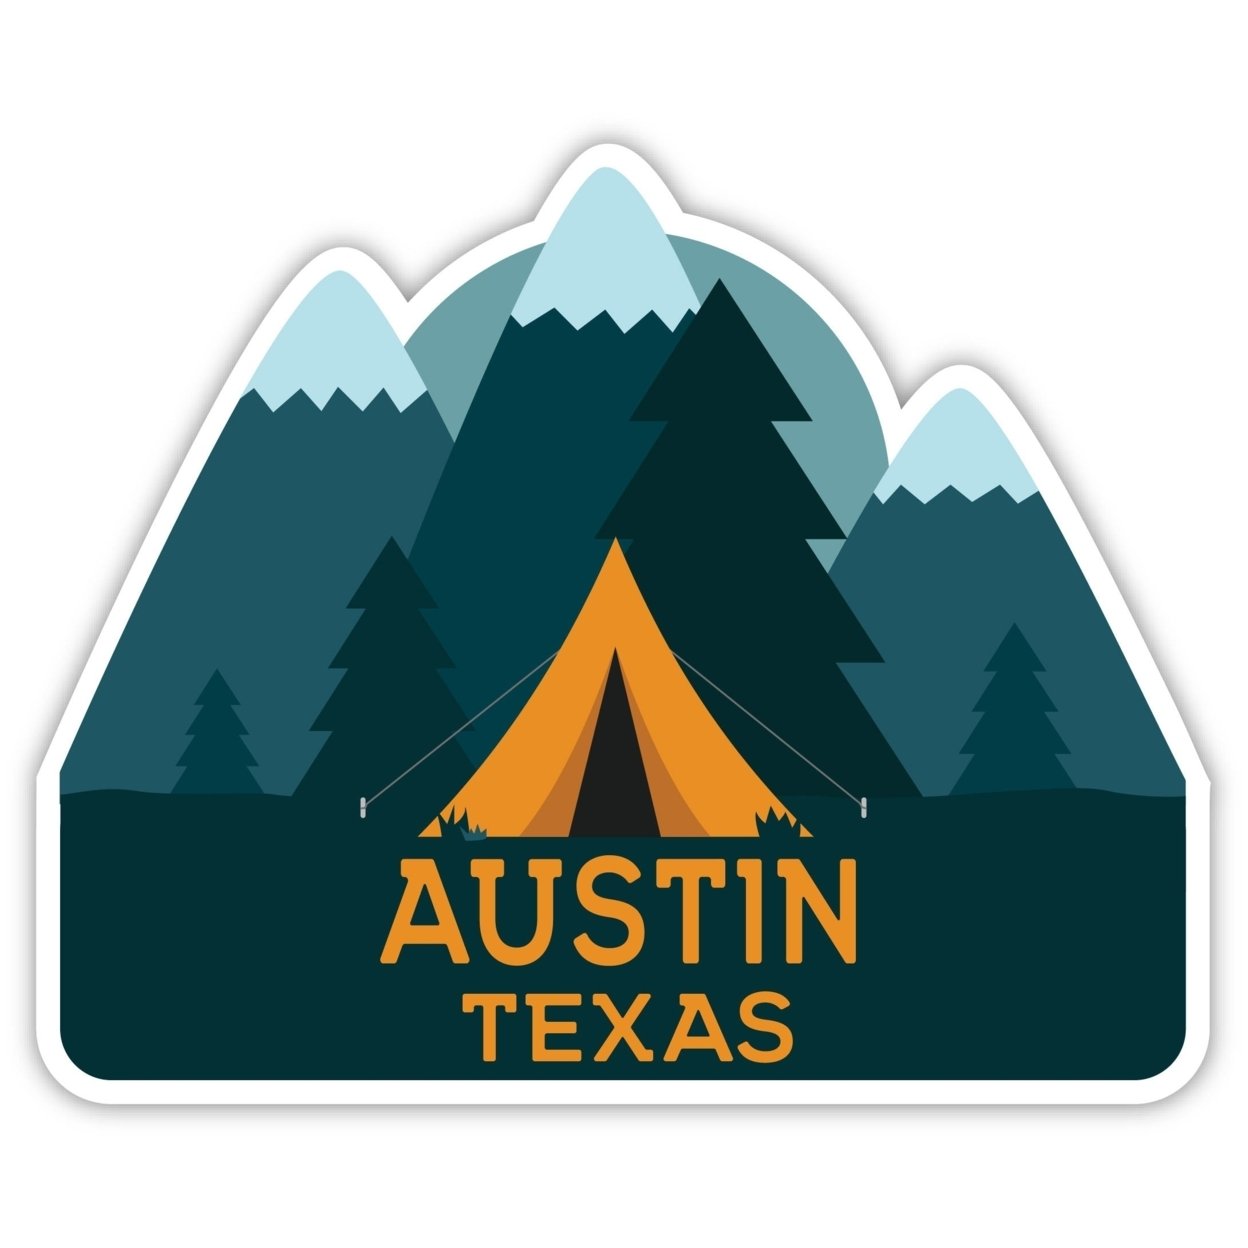 Austin Texas Souvenir Decorative Stickers (Choose Theme And Size) - Single Unit, 10-Inch, Tent